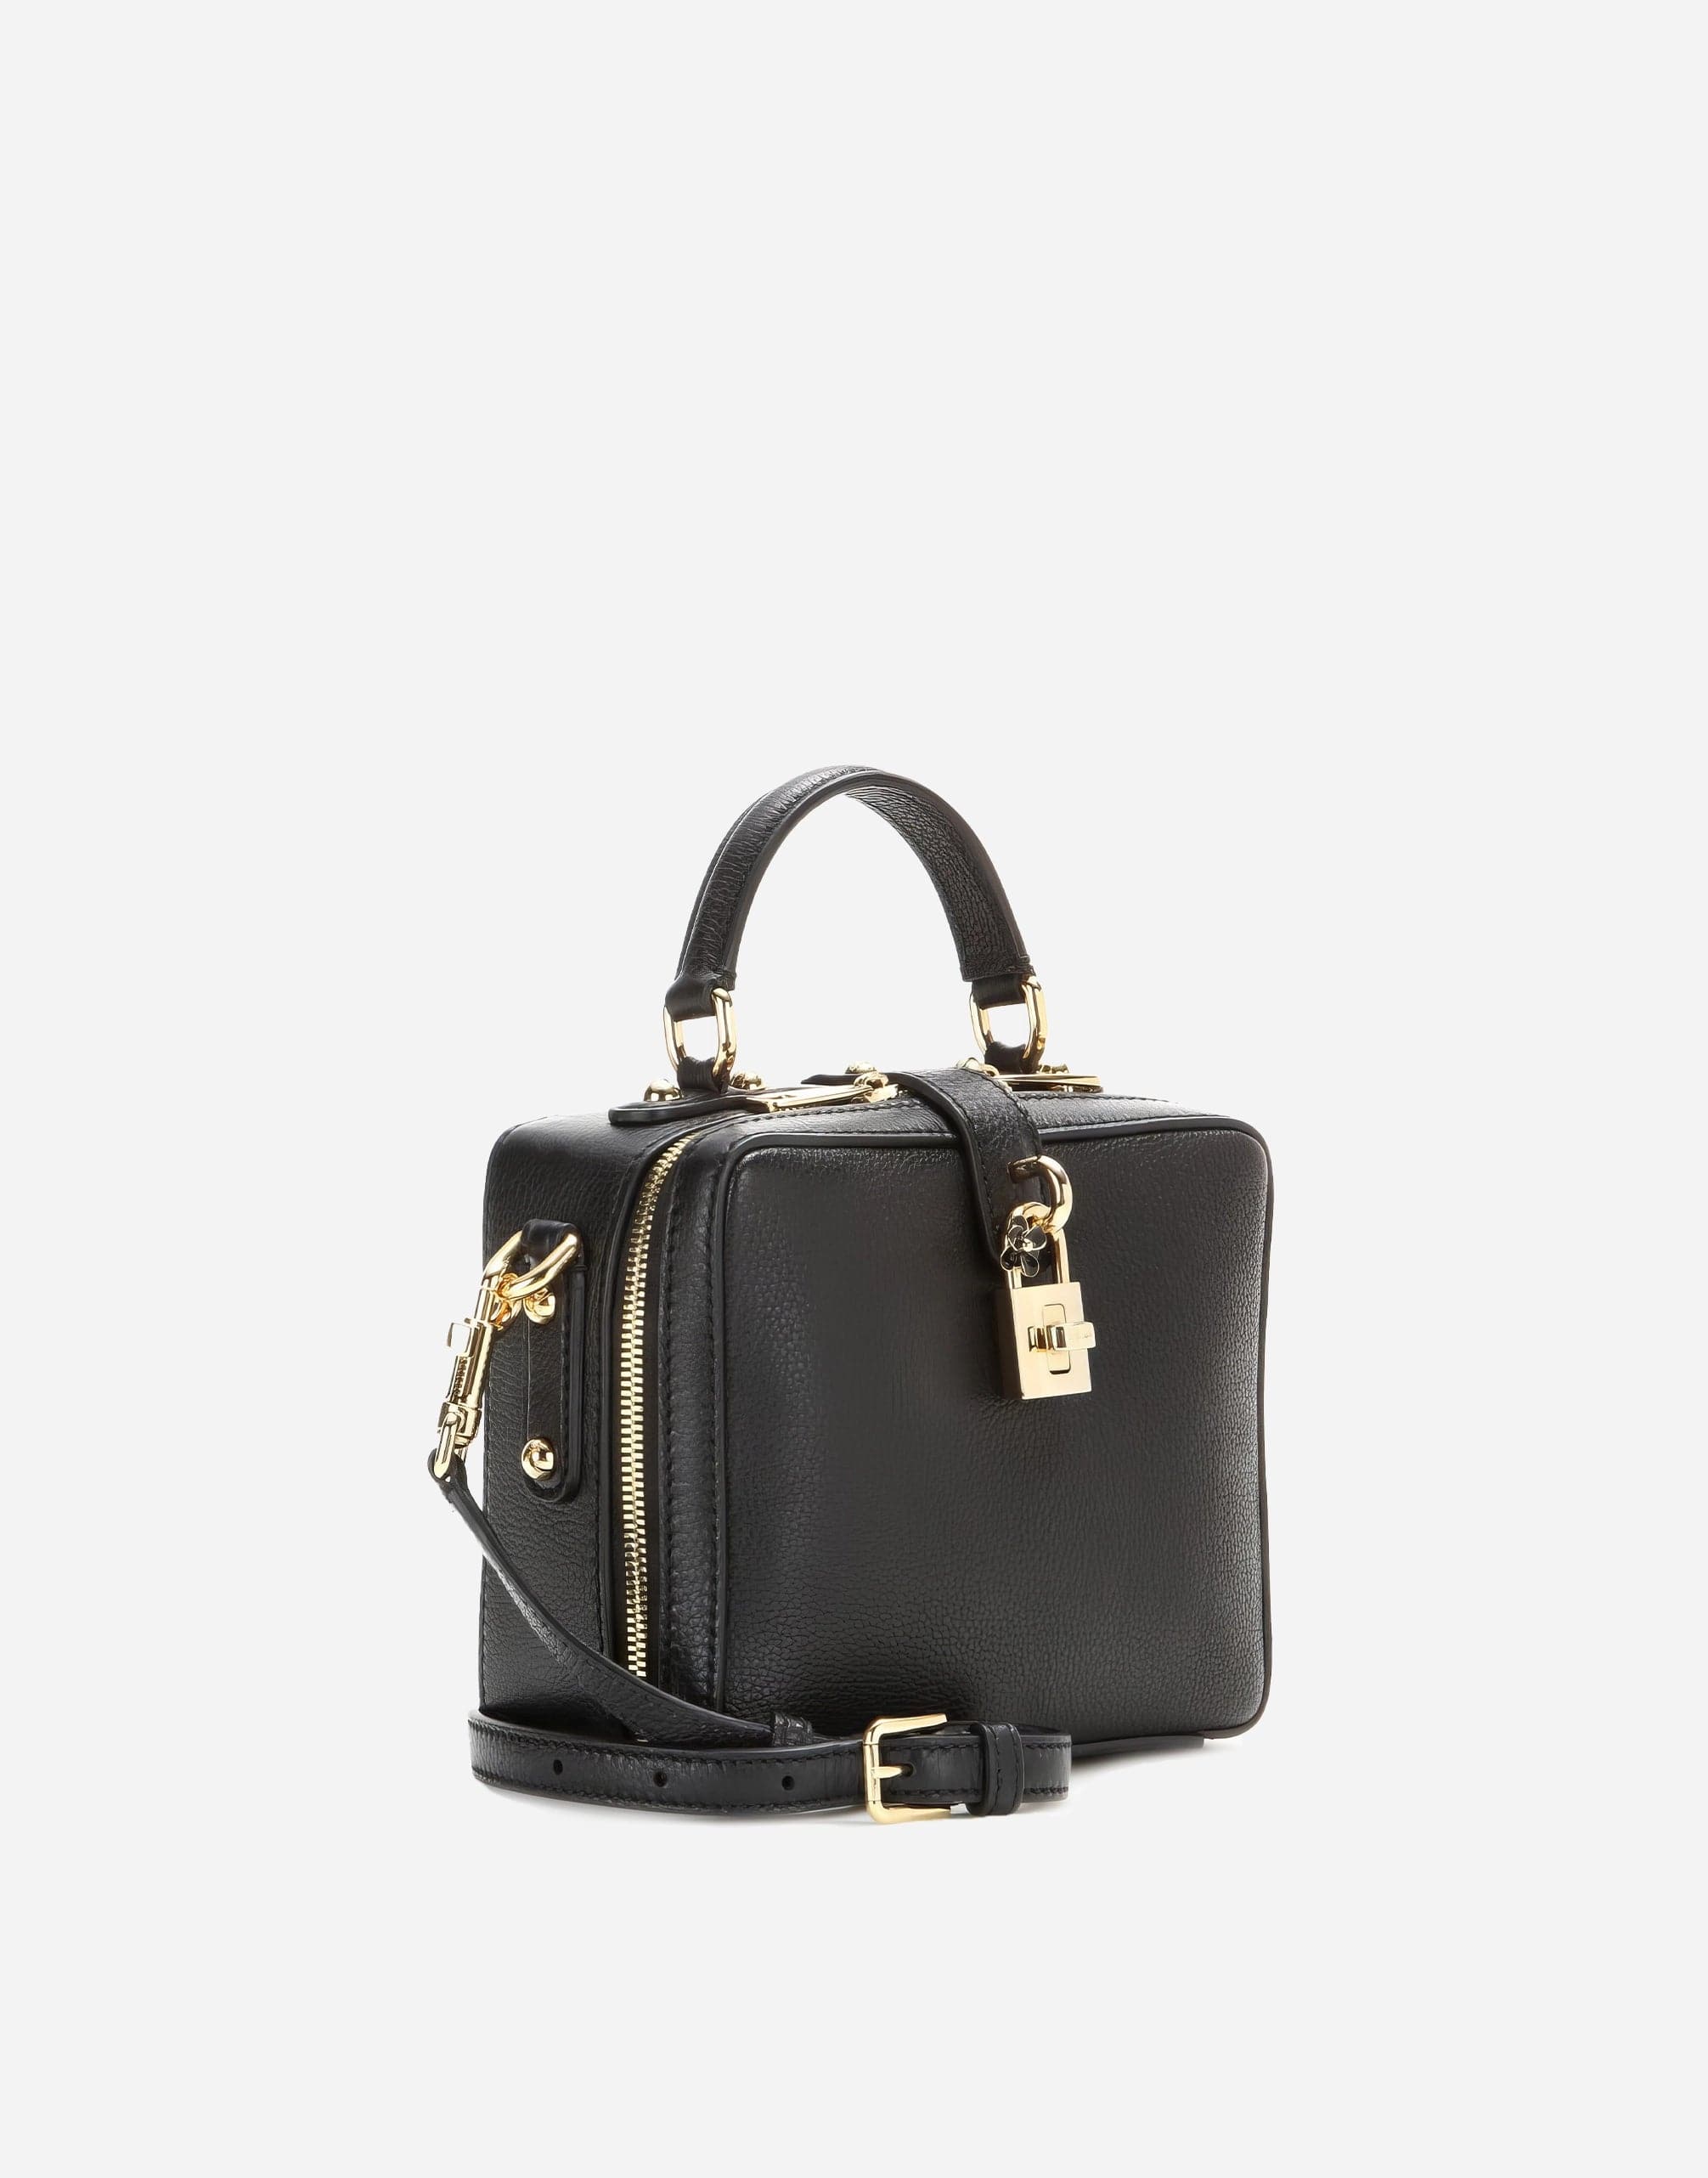 Dolce & Gabbana Rosaria Shoulder Bag